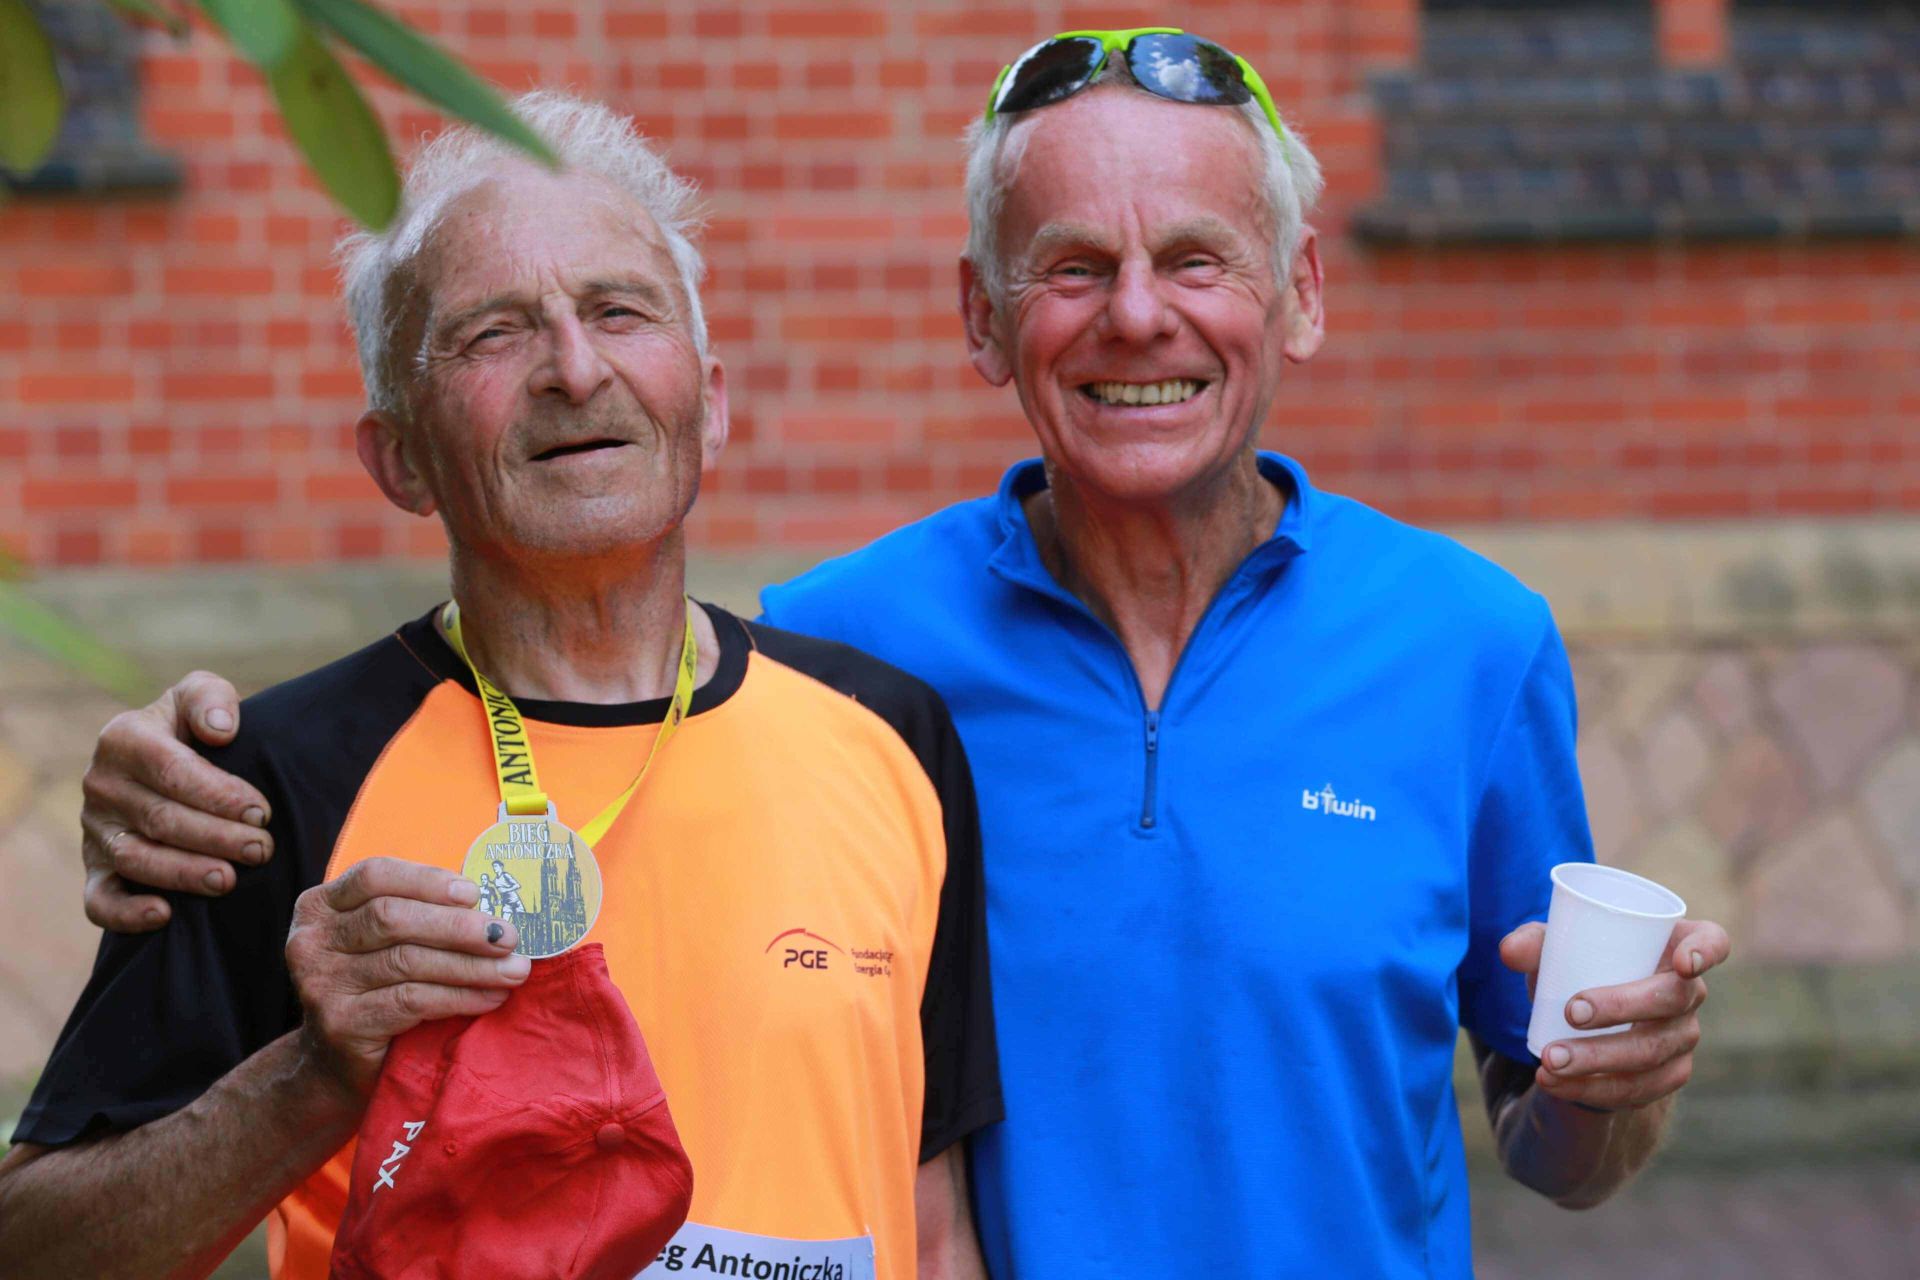 Najstarszy uczestnik Biegu św. Antoniego 81-letni Norbert Sielski (po lewej) z kolegą z biegowych tras Andrzejem Siwczykiem. Zdj. Wacław Troszka